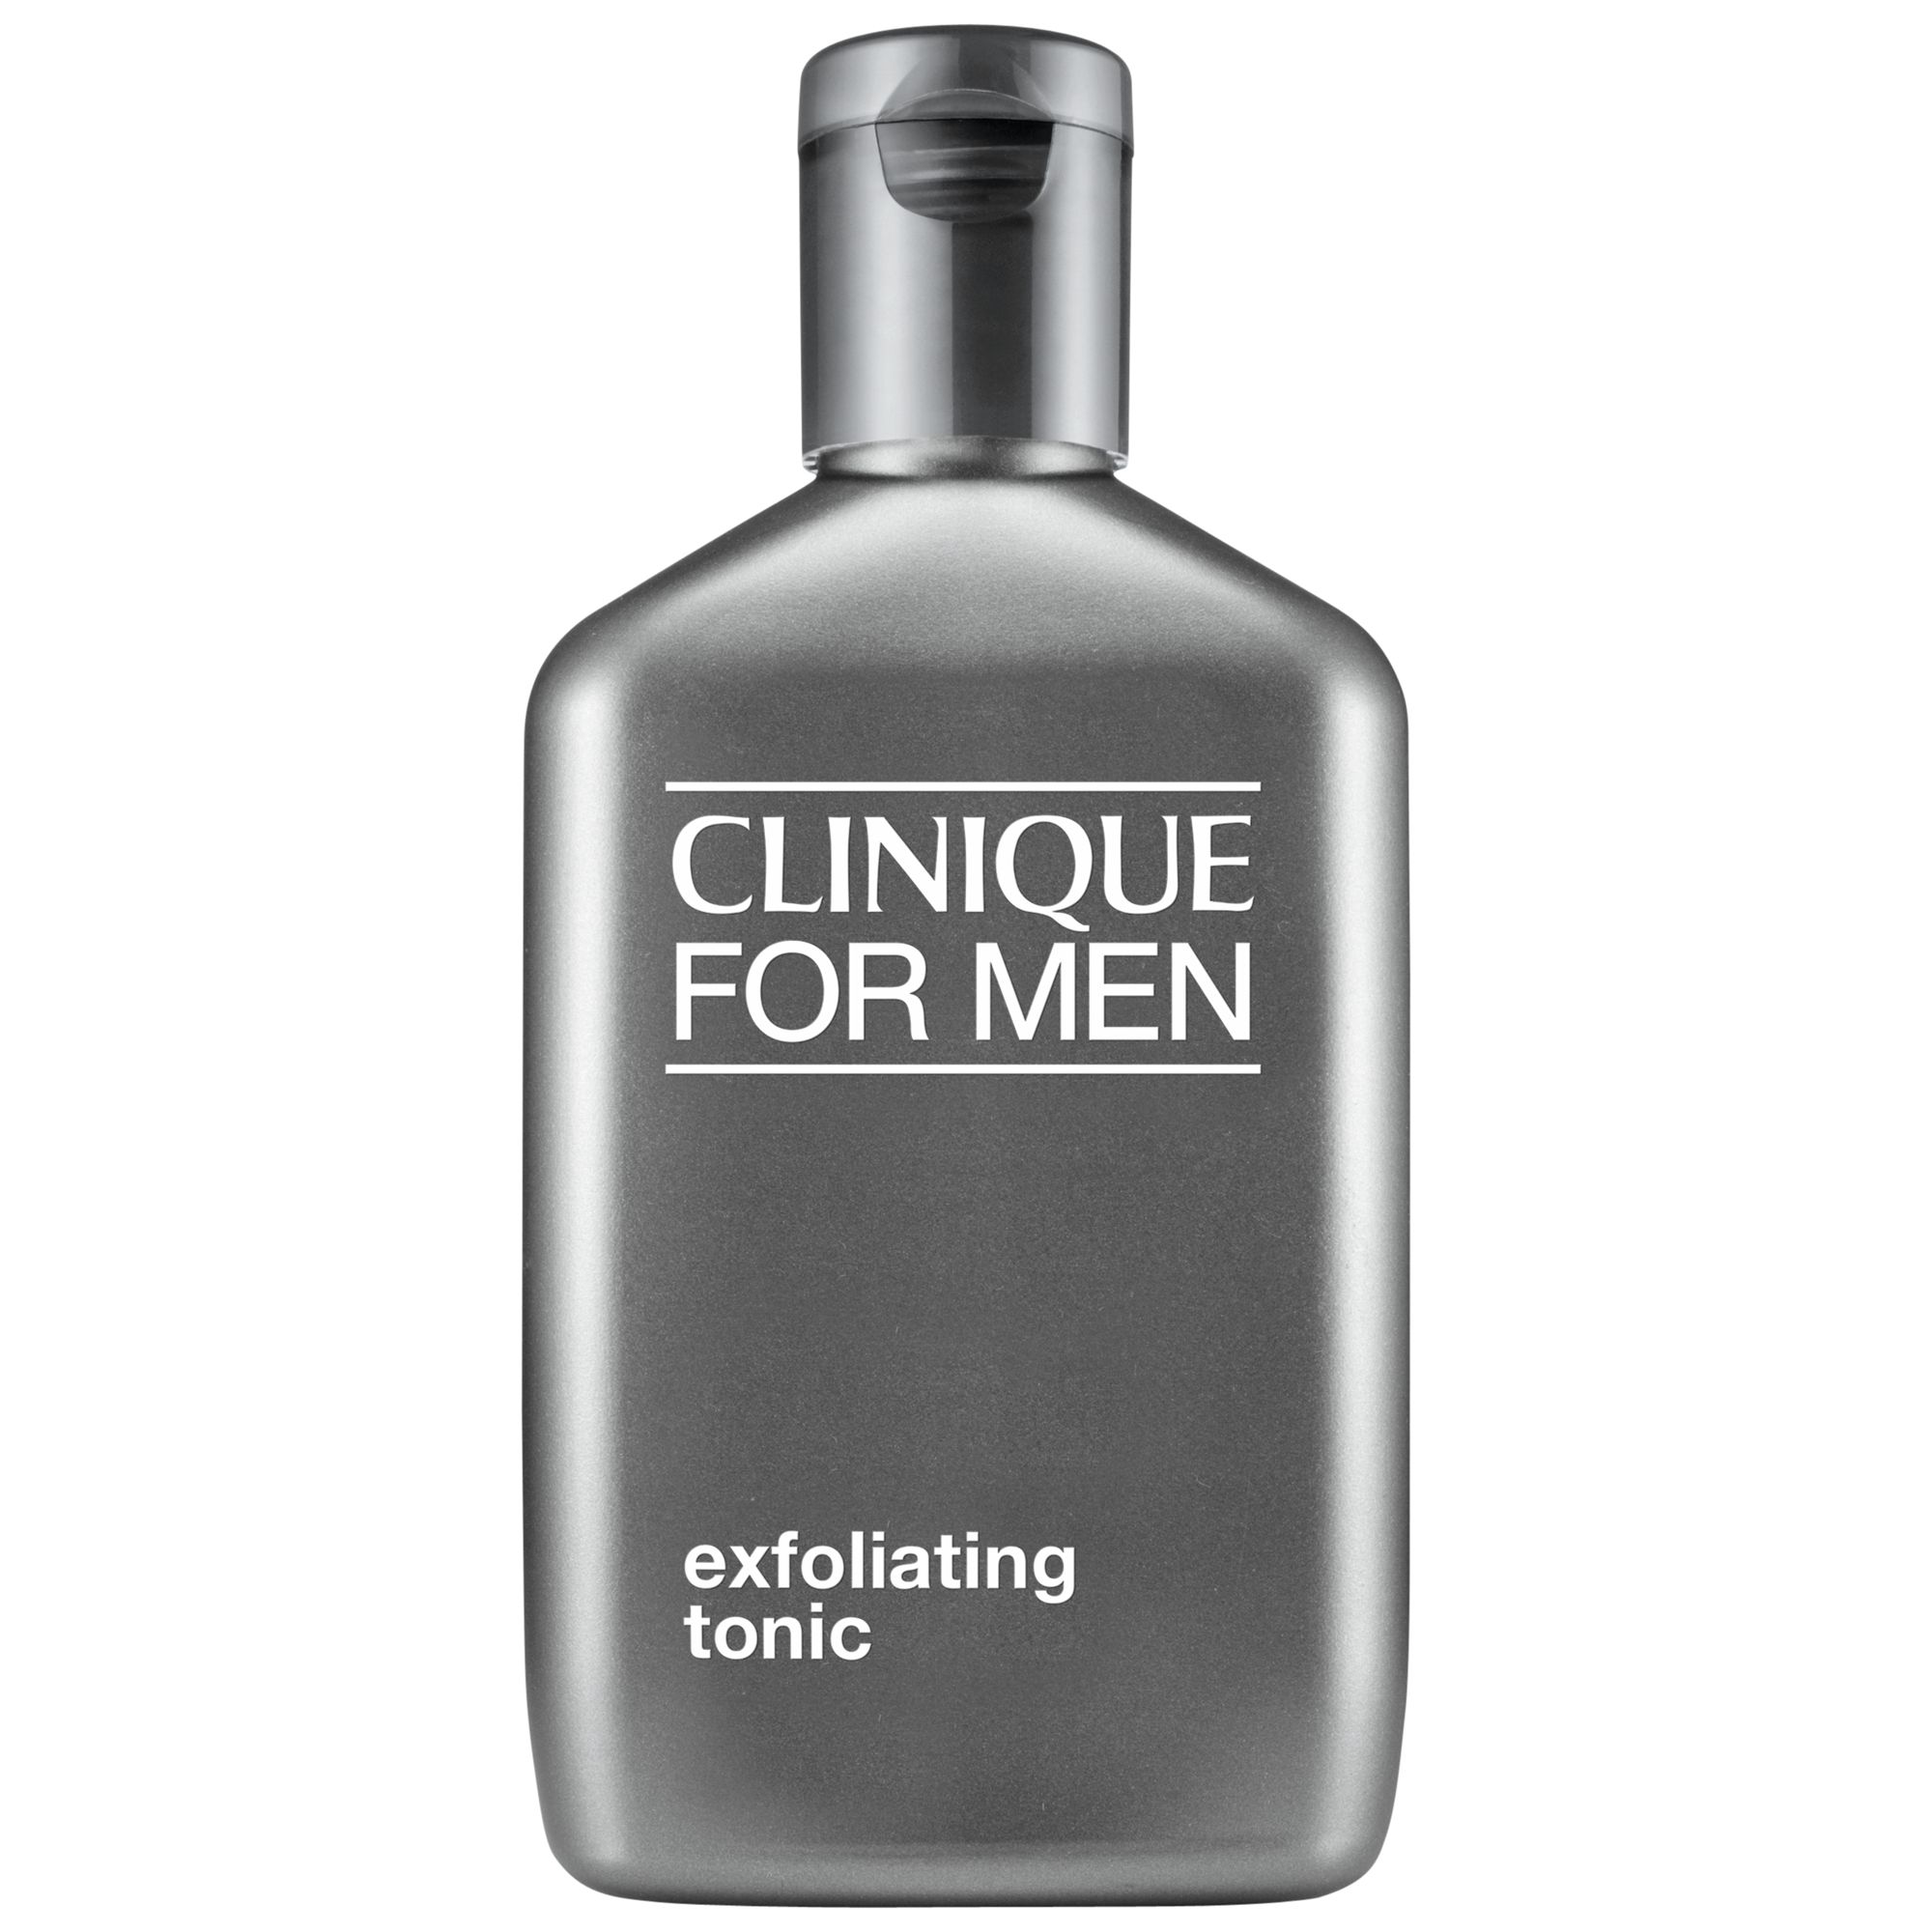 Clinique For Men Exfoliating Tonic, 200ml 1